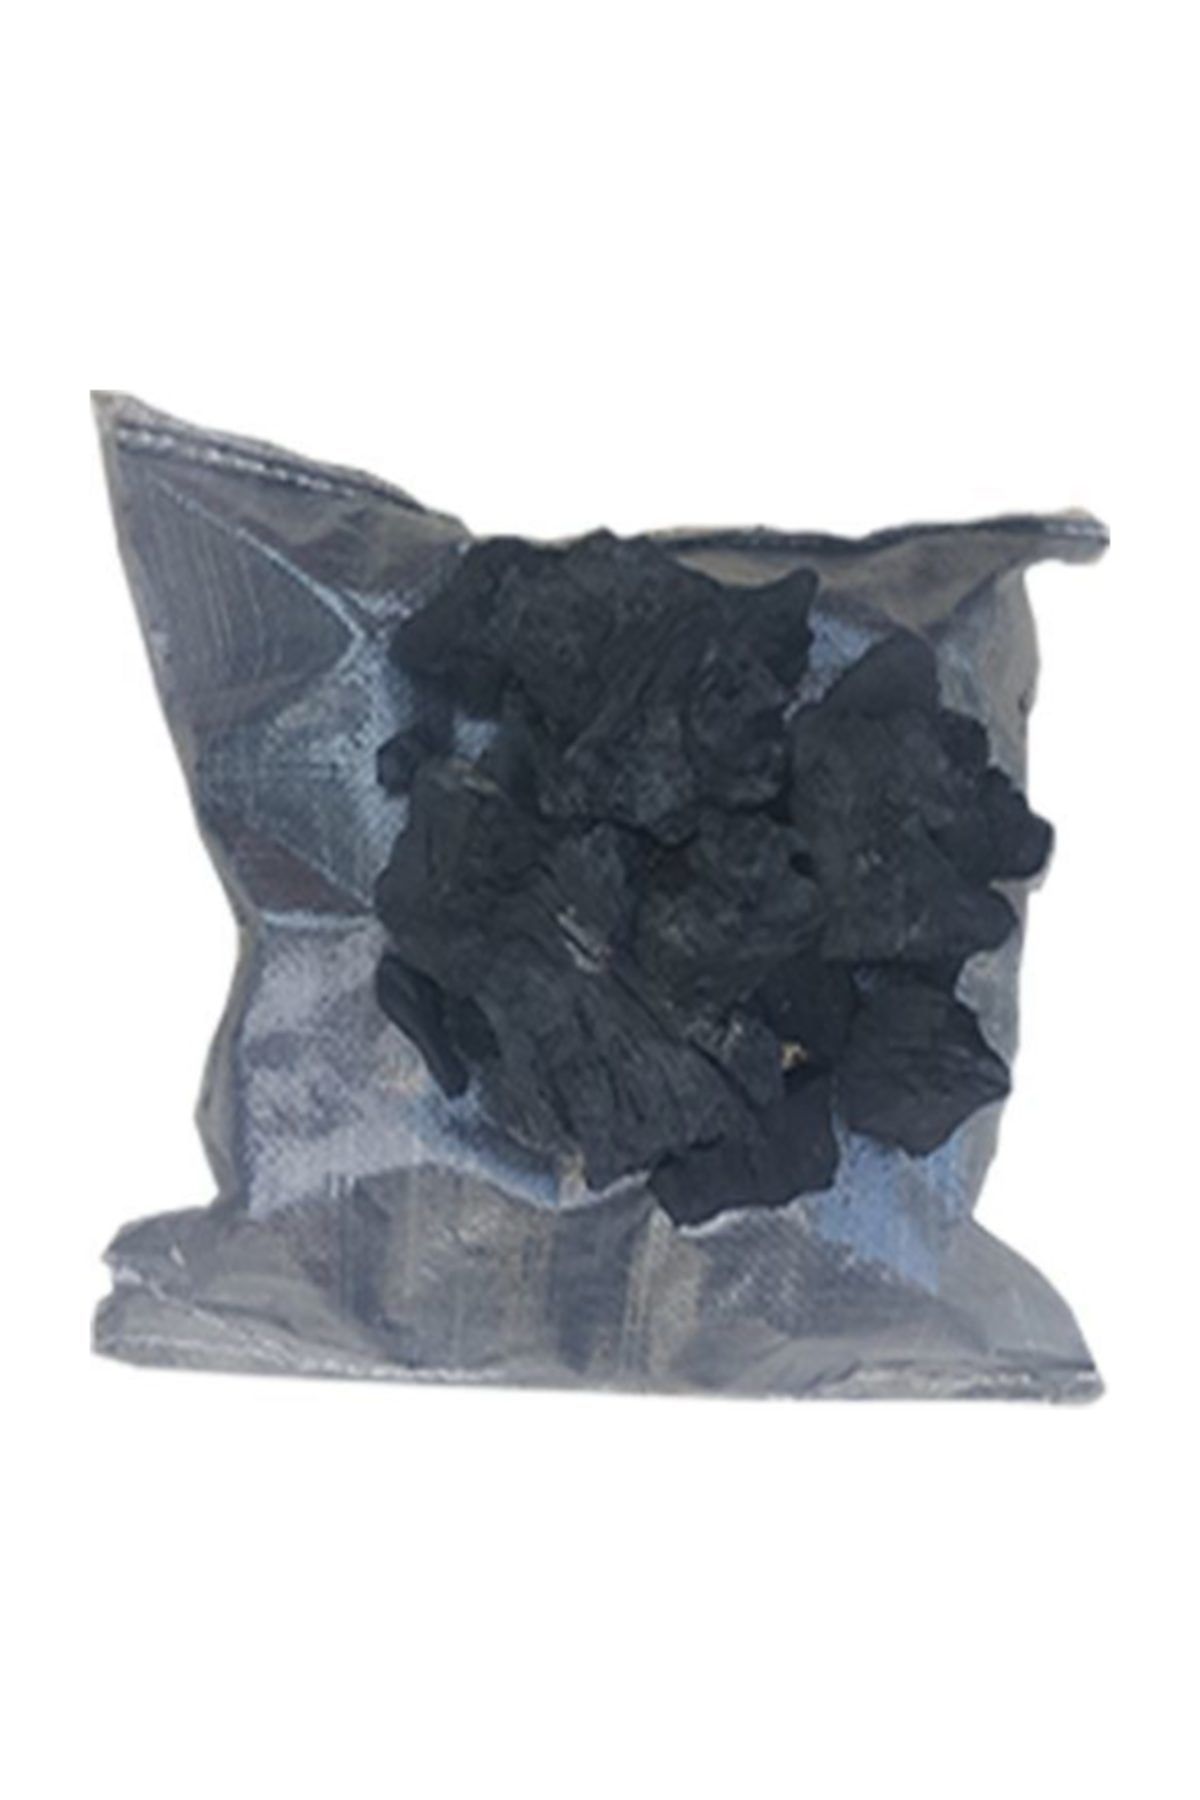 Yalova Fidan Market Torubahce Elenmiş Meşe Mangal Kömürü 5 Kg Büyük Parçalı Tozsuz